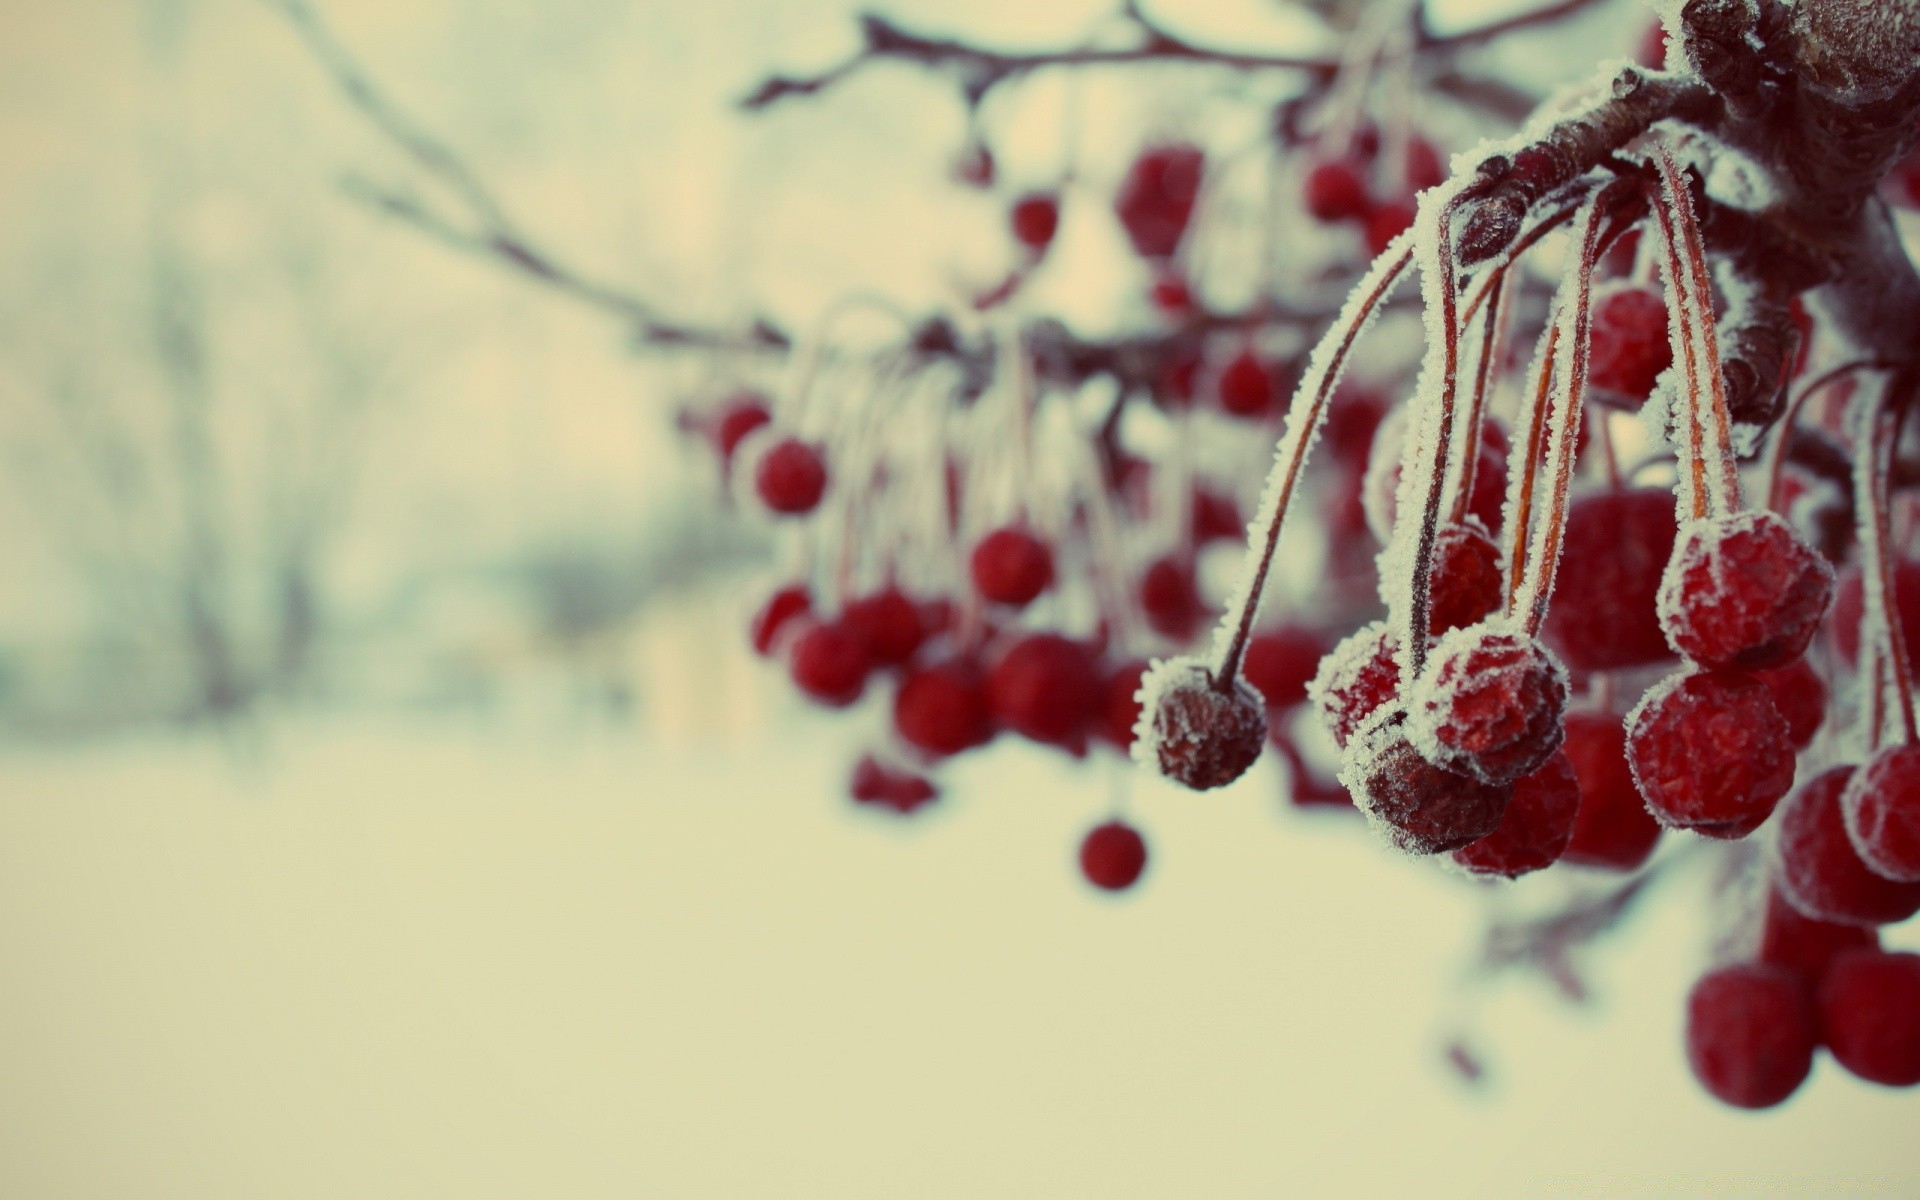 Frozen Berries Macro - Android wallpapers